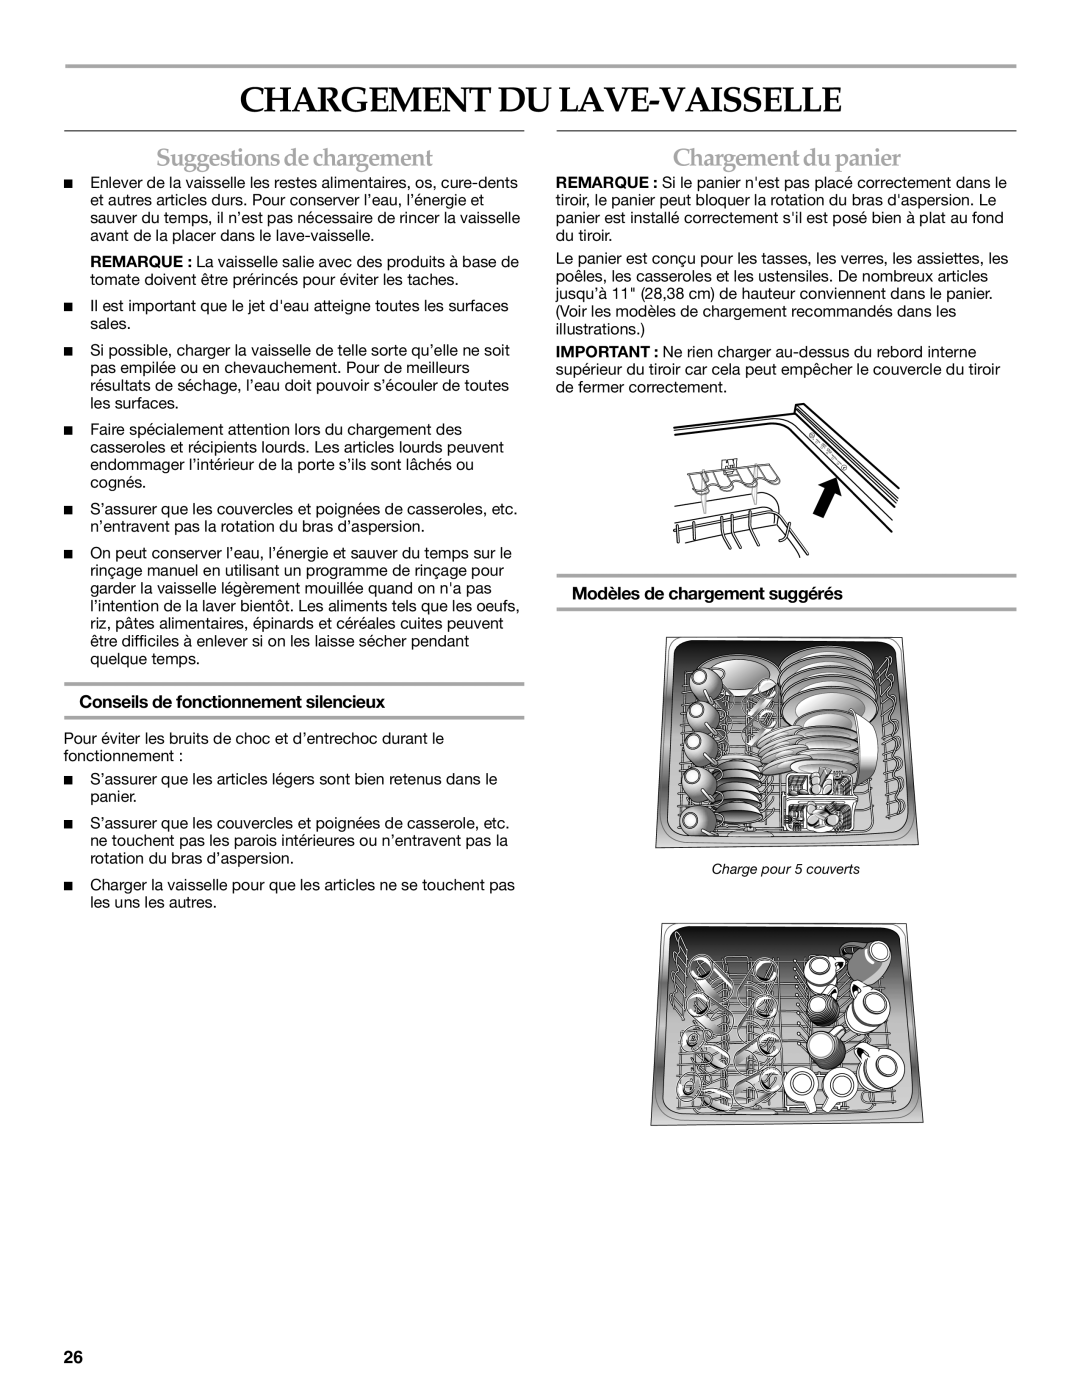 KitchenAid KUDD01DPPA, 8573754 manual Chargement Du Lave-Vaisselle, Suggestionsde chargementChargement du panier 